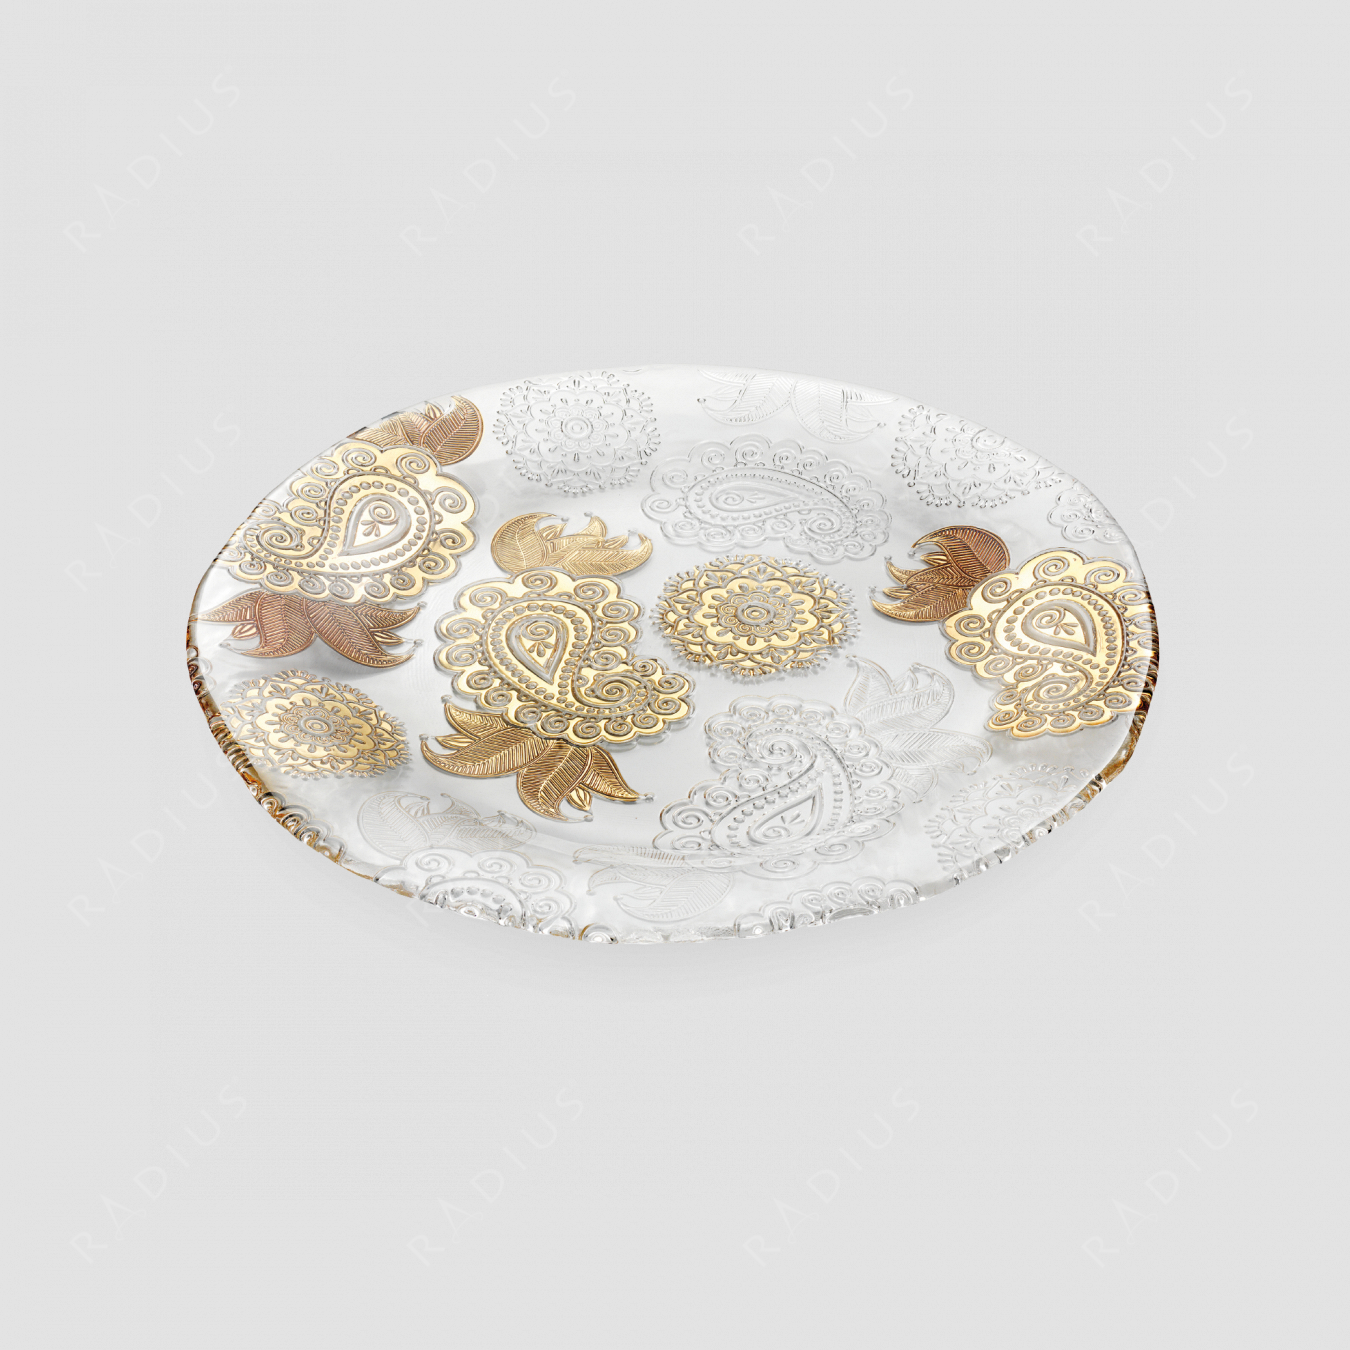 Блюдо , диаметр: 37 см. высота: 2,5 см, материал: стекло, цвет: золото, серия Pashmina, IVV (Italy), Италия